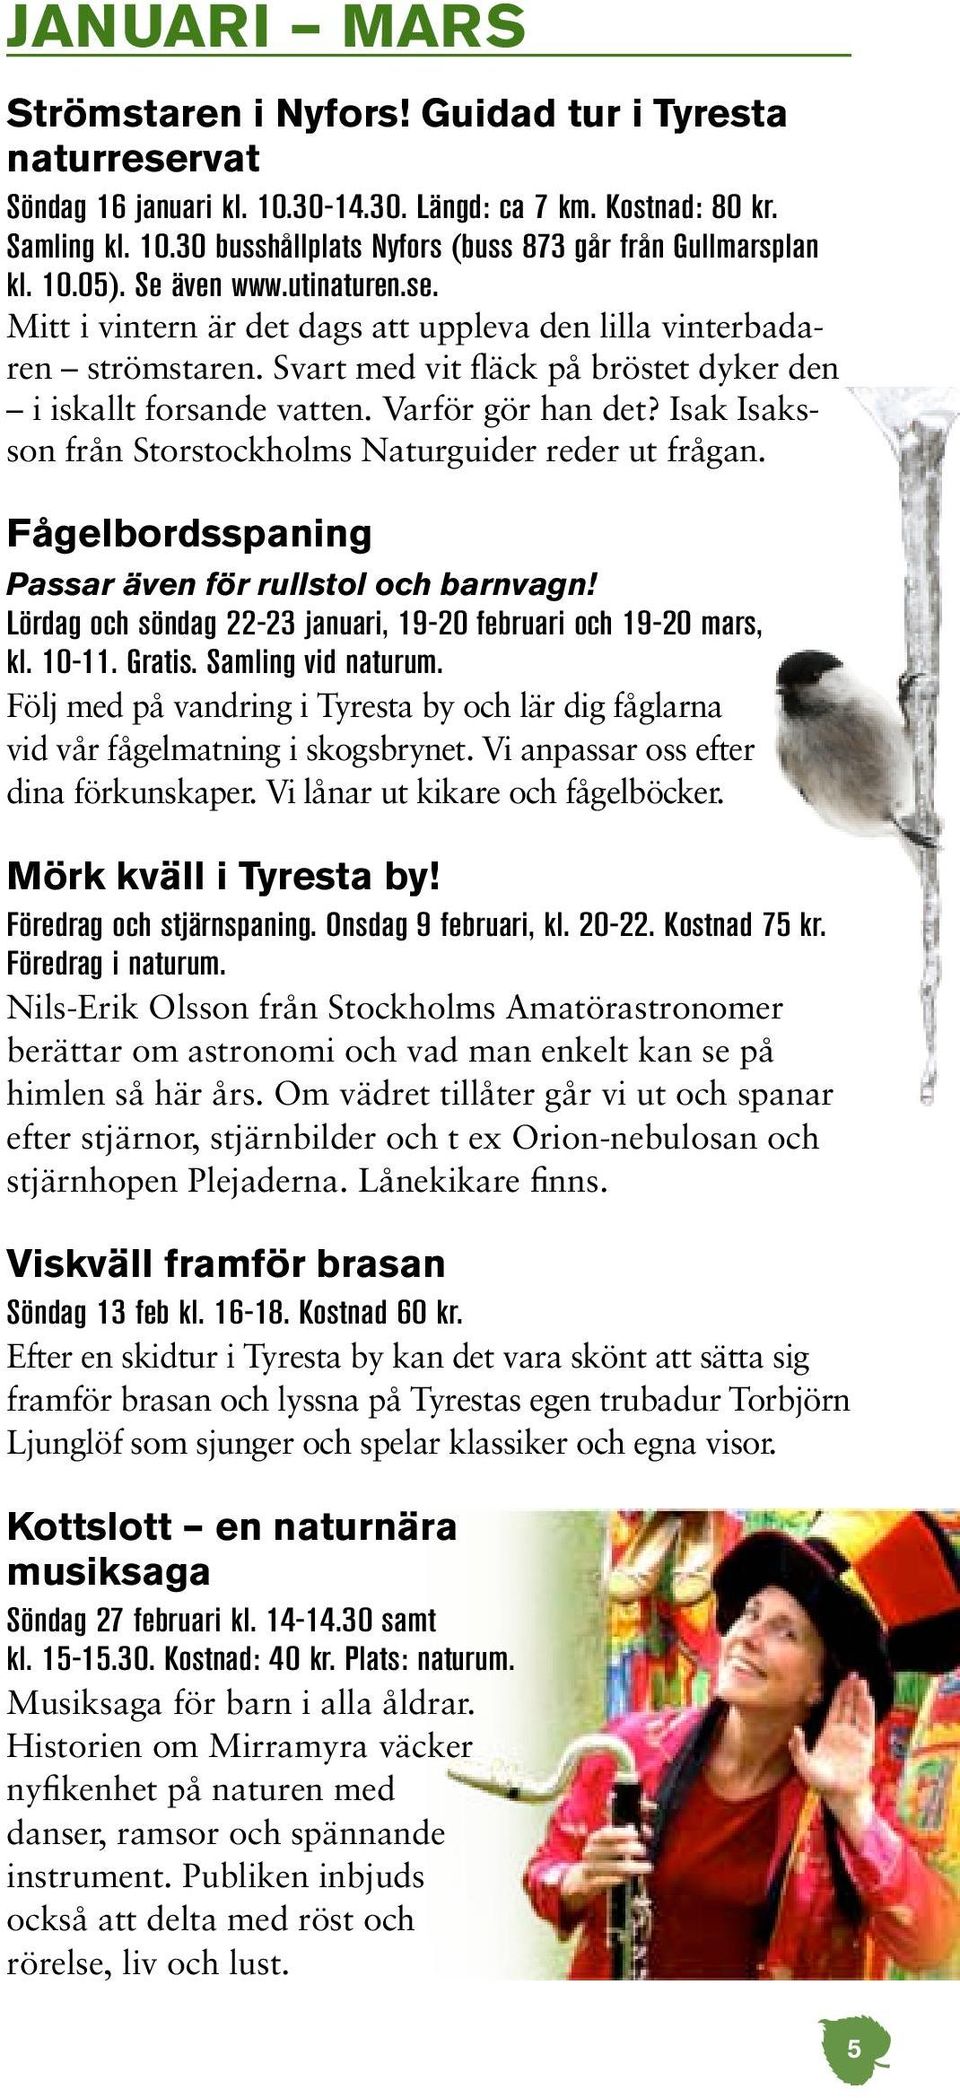 Isak Isaksson från Storstockholms Naturguider reder ut frågan. Fågelbordsspaning Passar även för rullstol och barnvagn! Lördag och söndag 22-23 januari, 19-20 februari och 19-20 mars, kl. 10-11.